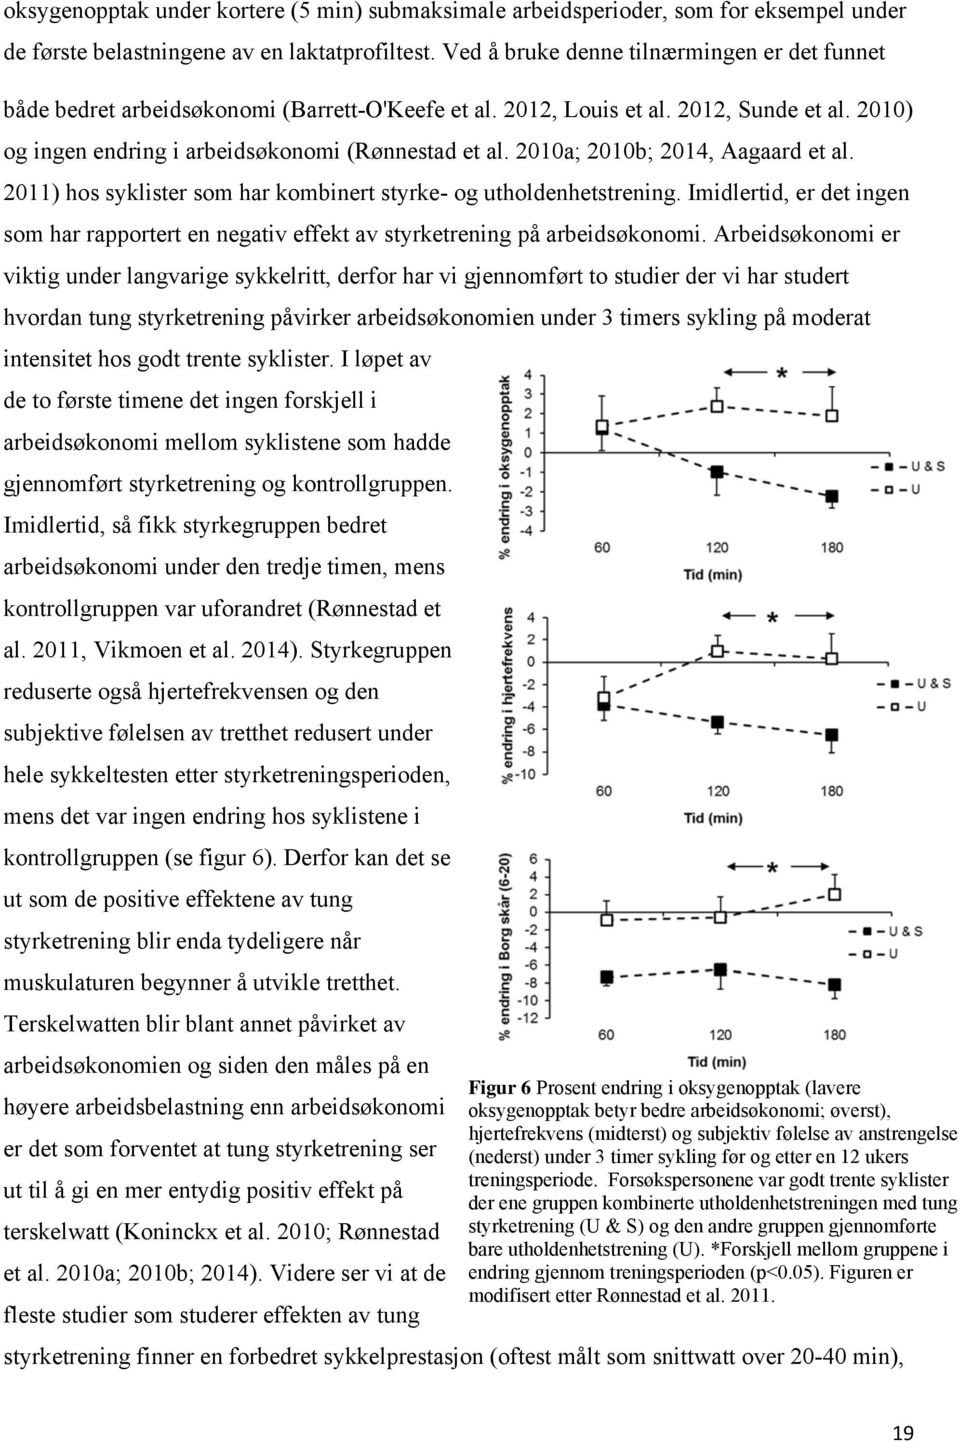 2010a; 2010b; 2014, Aagaard et al. 2011) hos syklister som har kombinert styrke- og utholdenhetstrening.